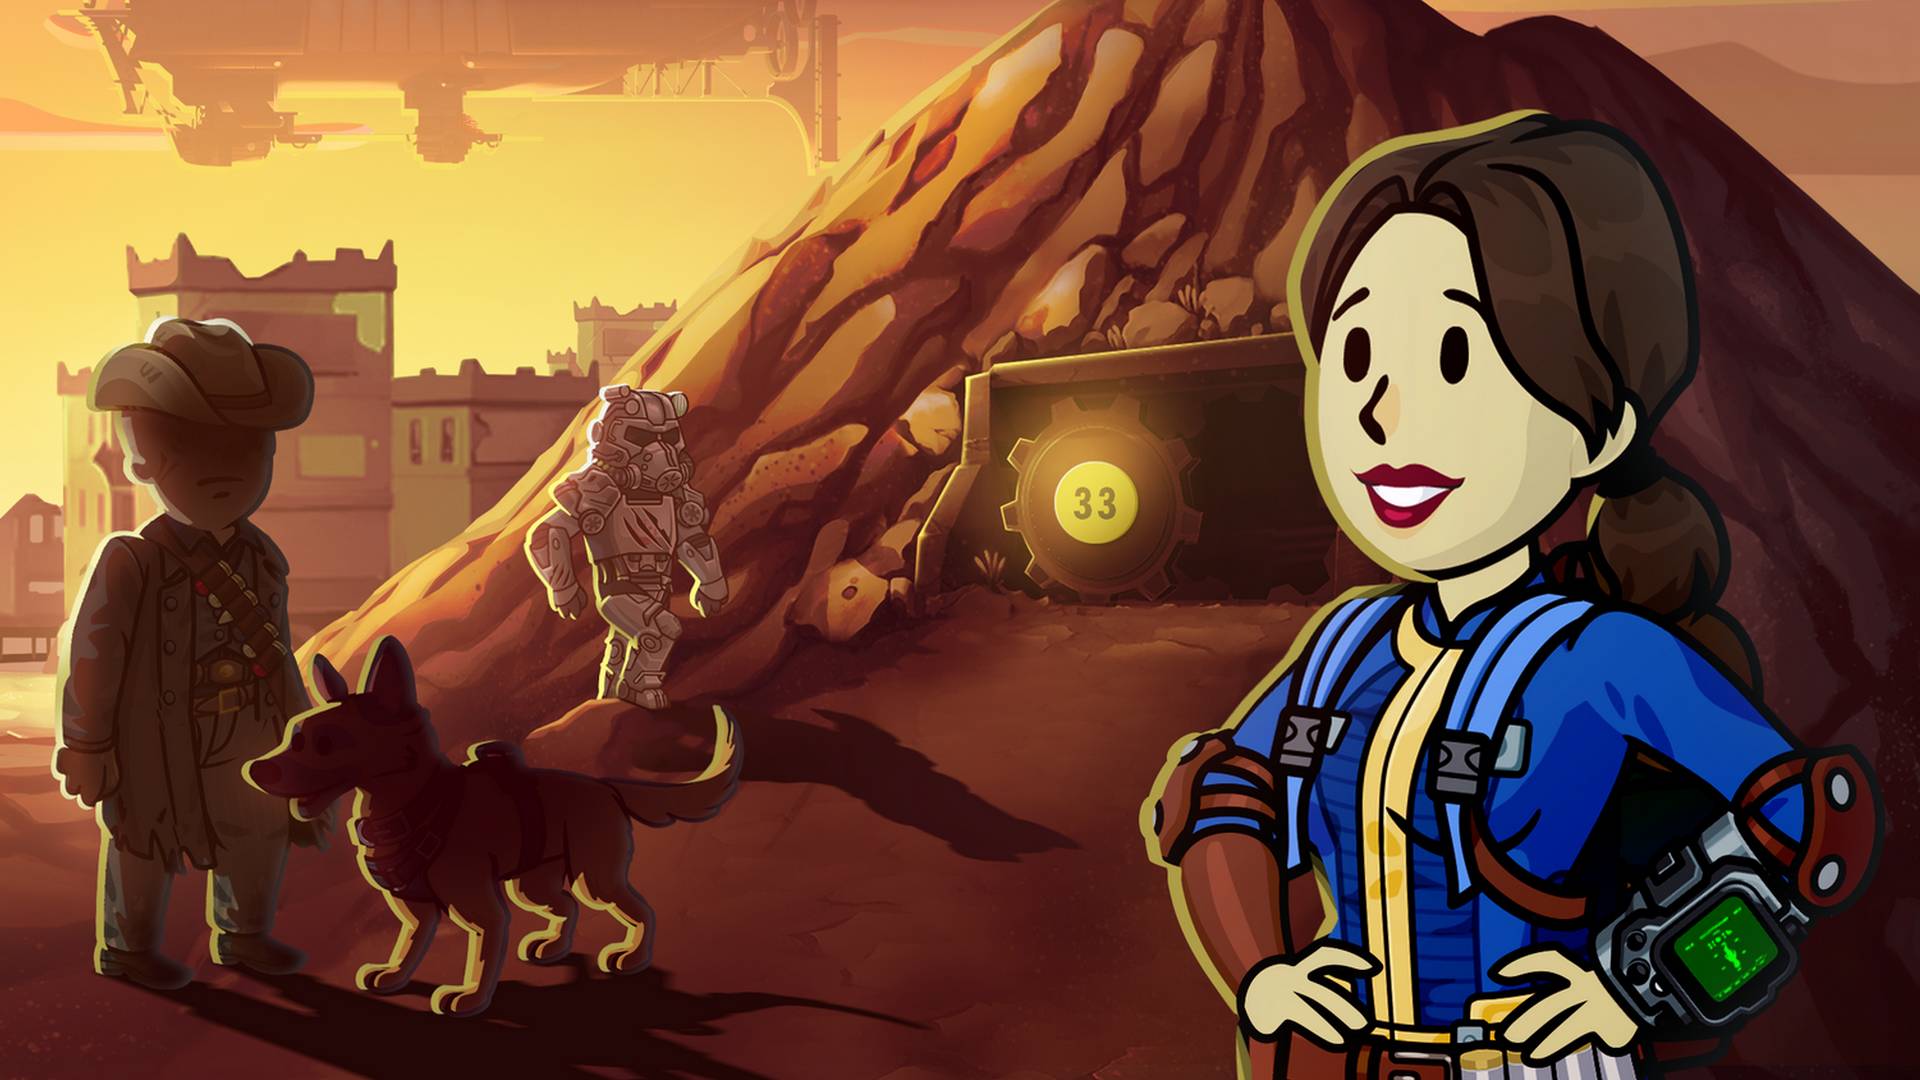 Les jeux Fallout attirent 5 millions de joueurs en un seul jour grâce à la série, c'est énorme